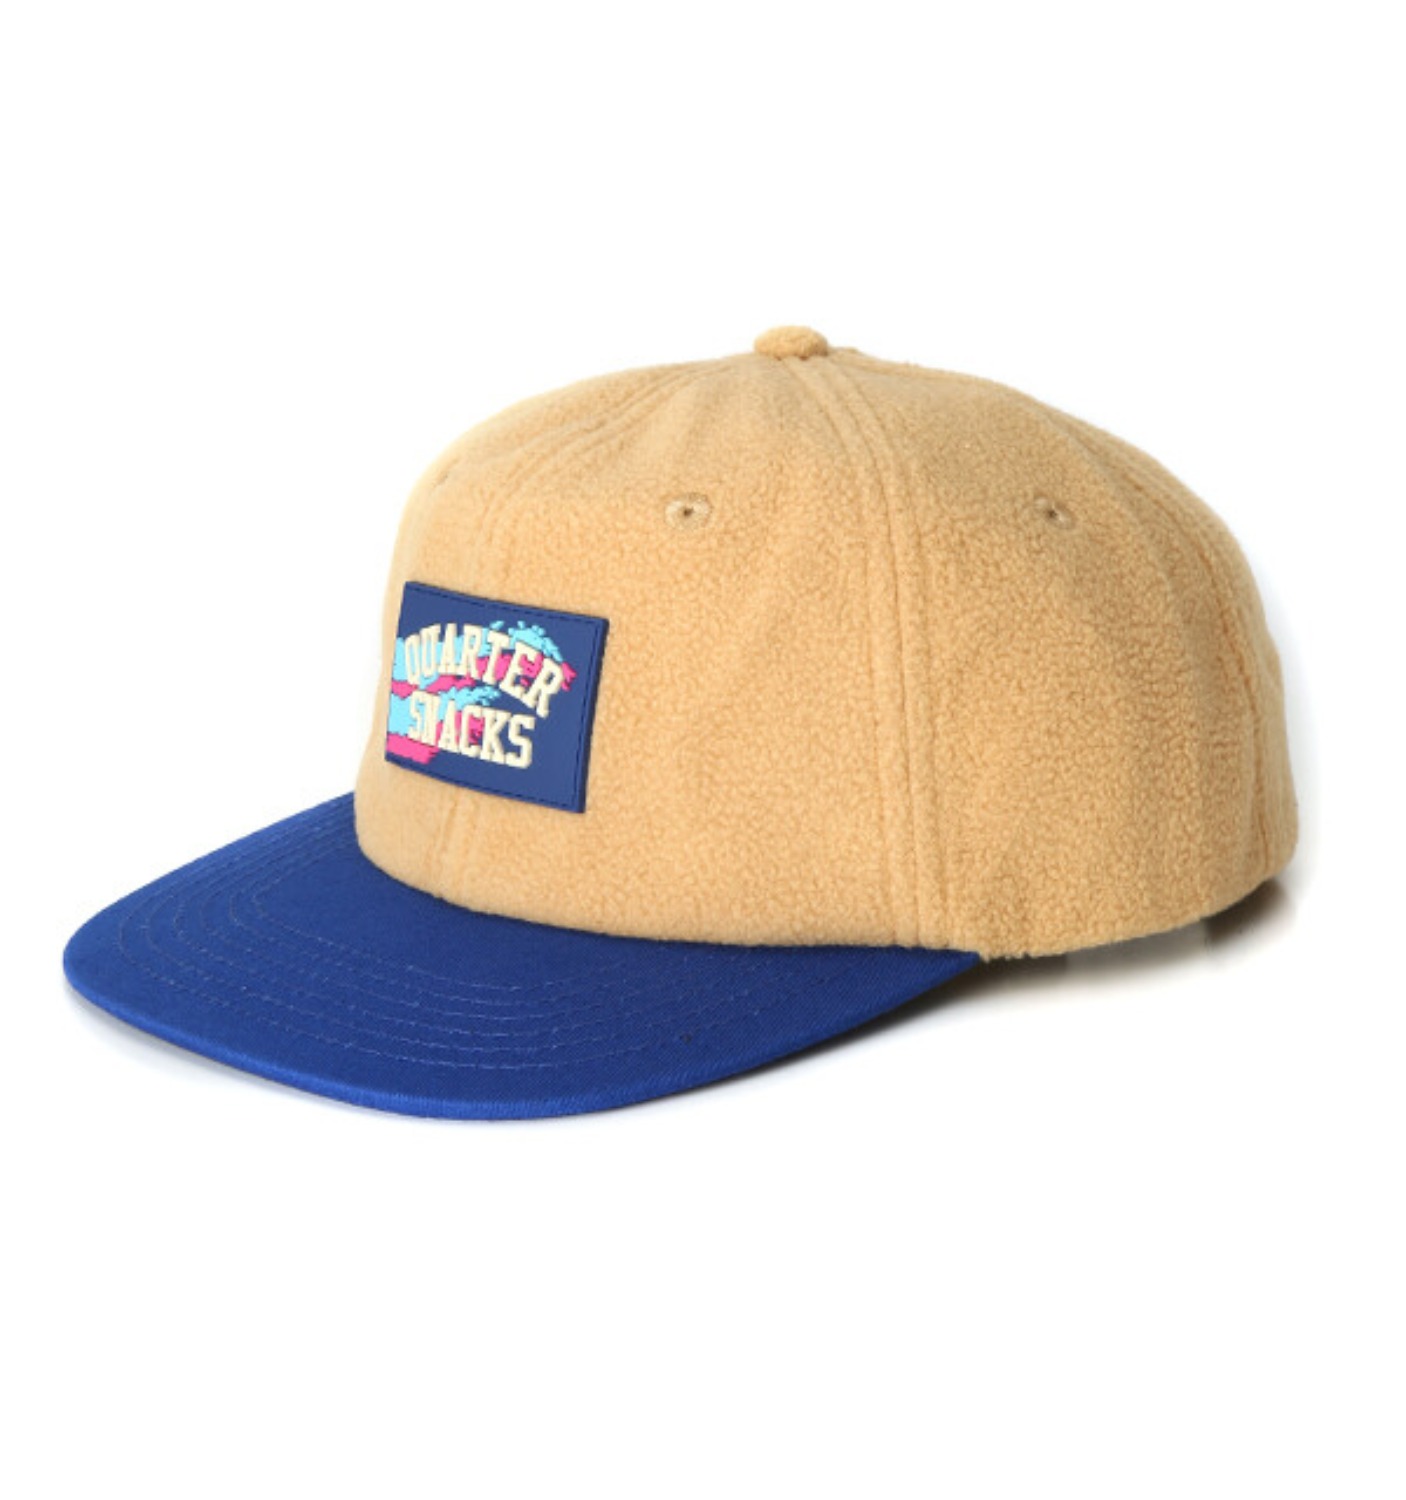 FLEECE CAP OFFWHITE/BLUE